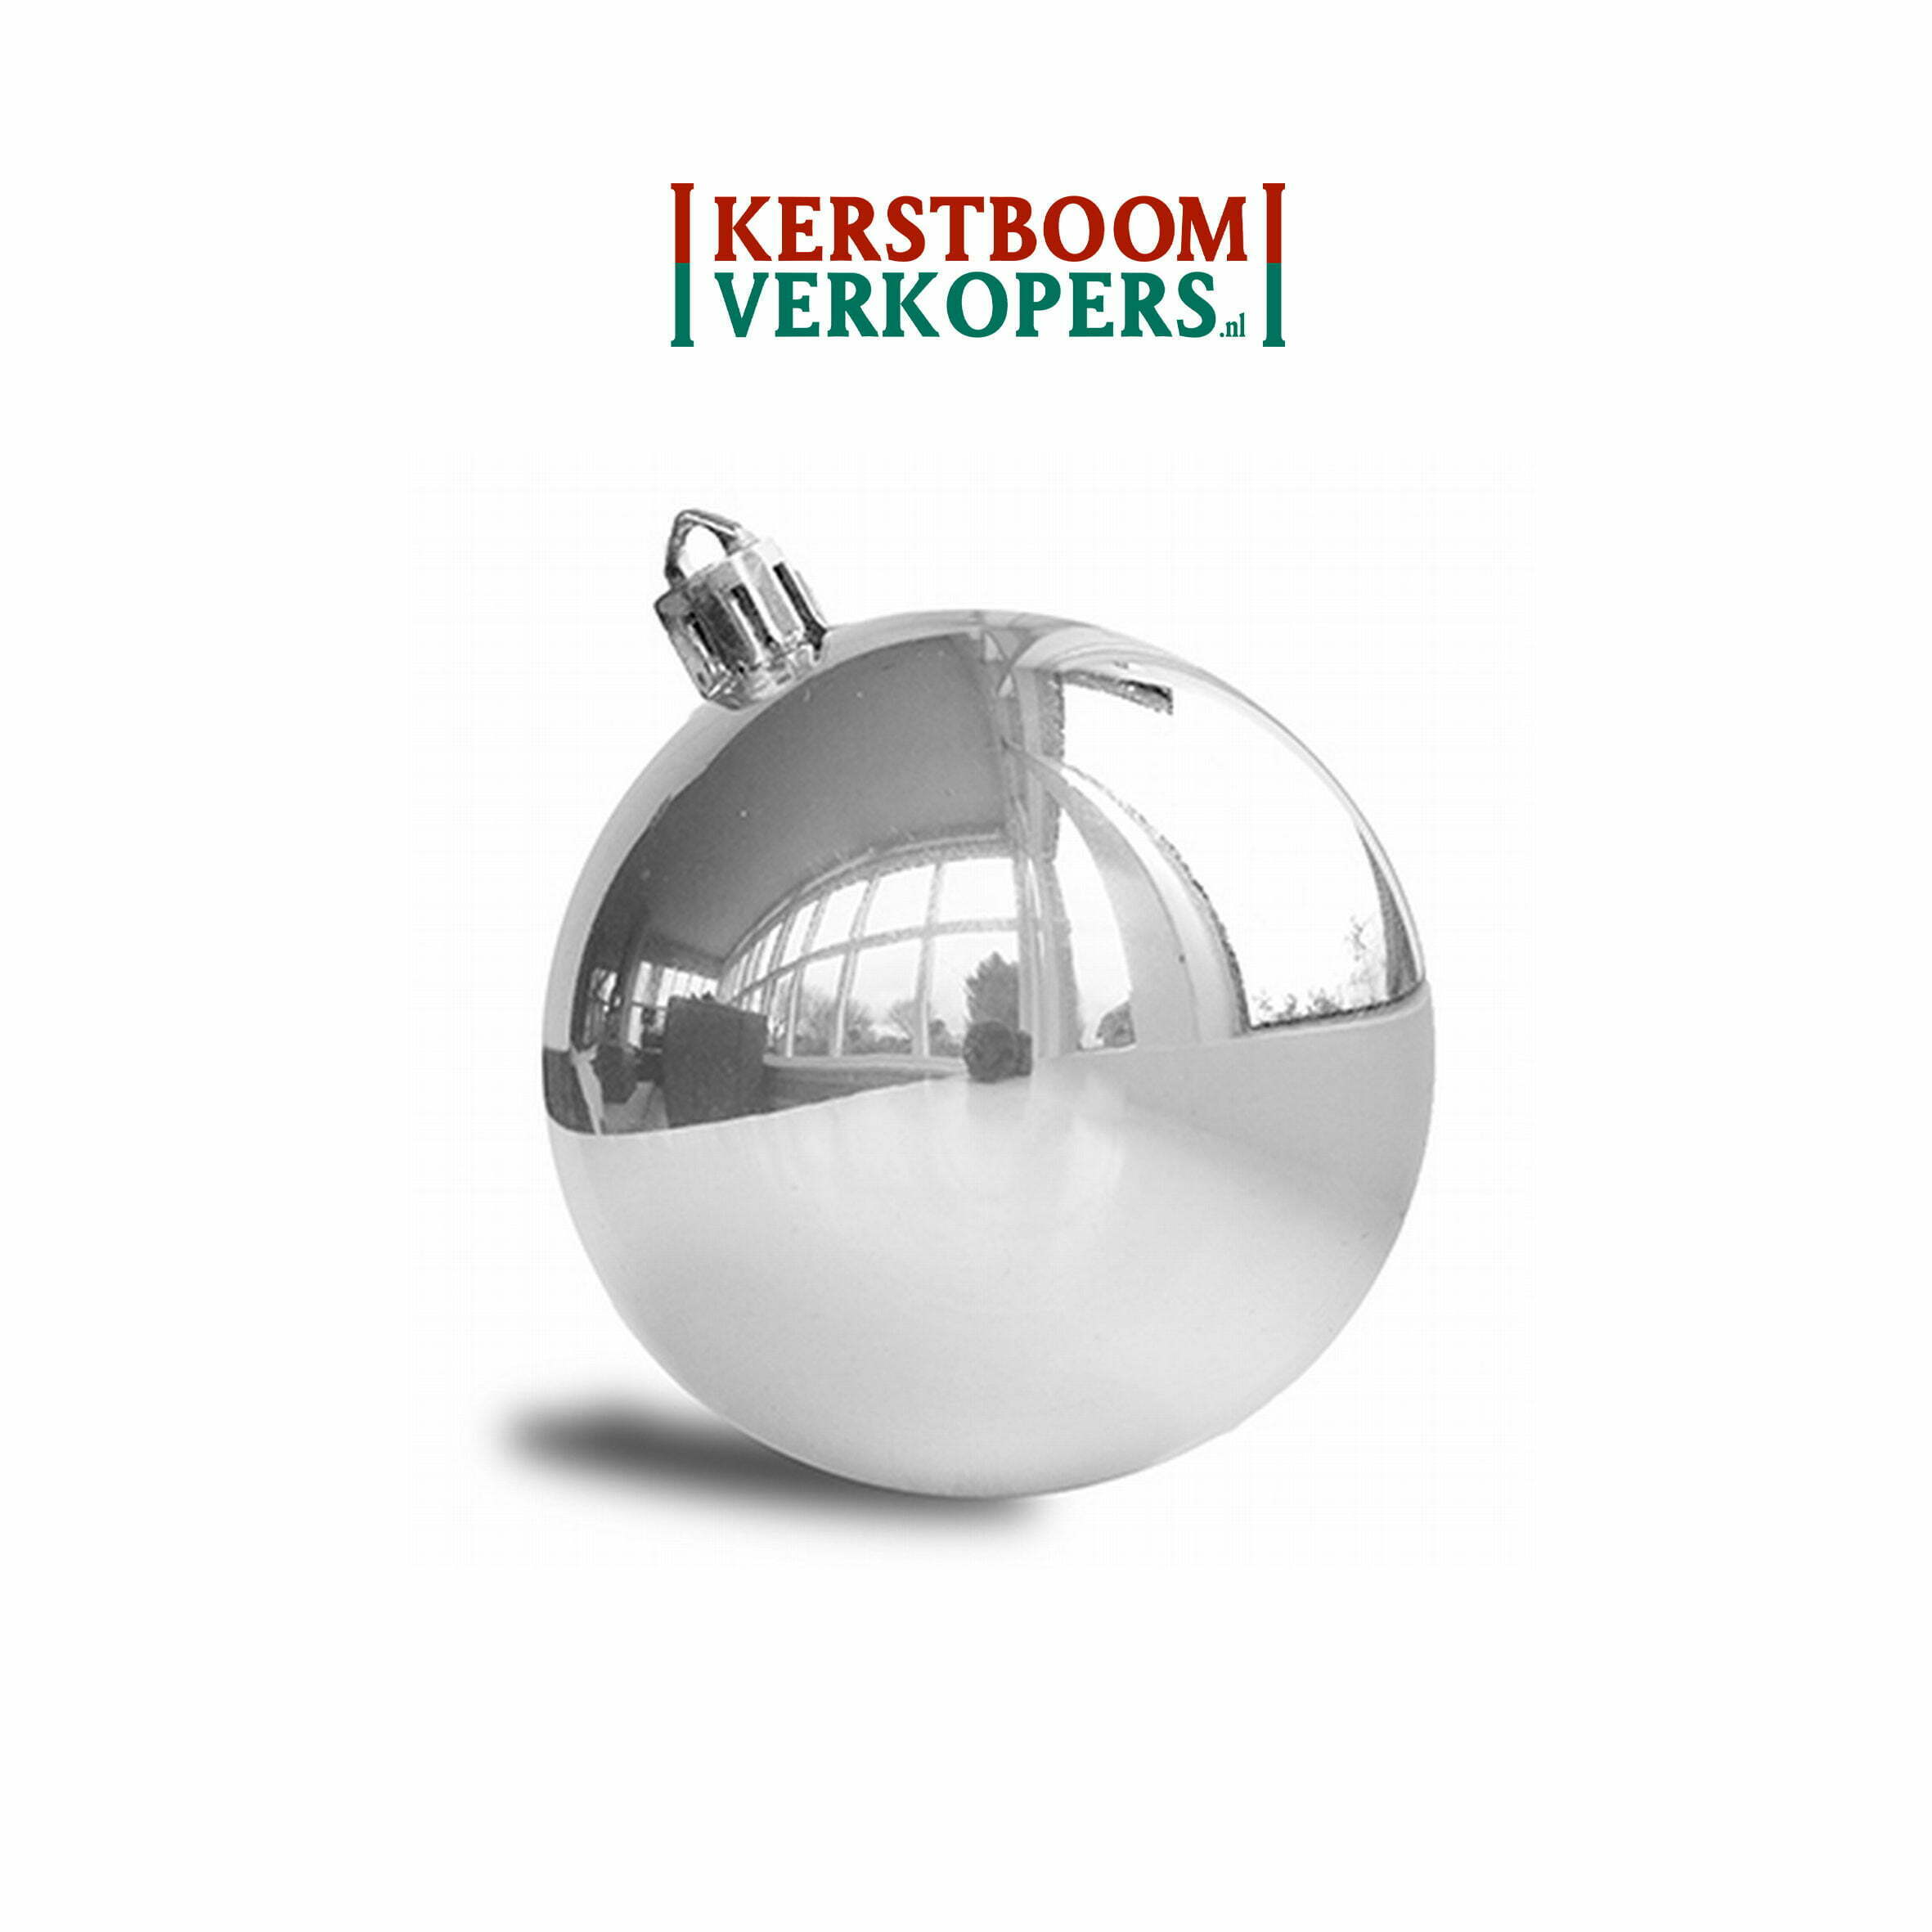 dat is alles passagier deed het Kerstballen zilver (glans) - 8cm - €99,- per st. - Kerstboomverkopers.nl